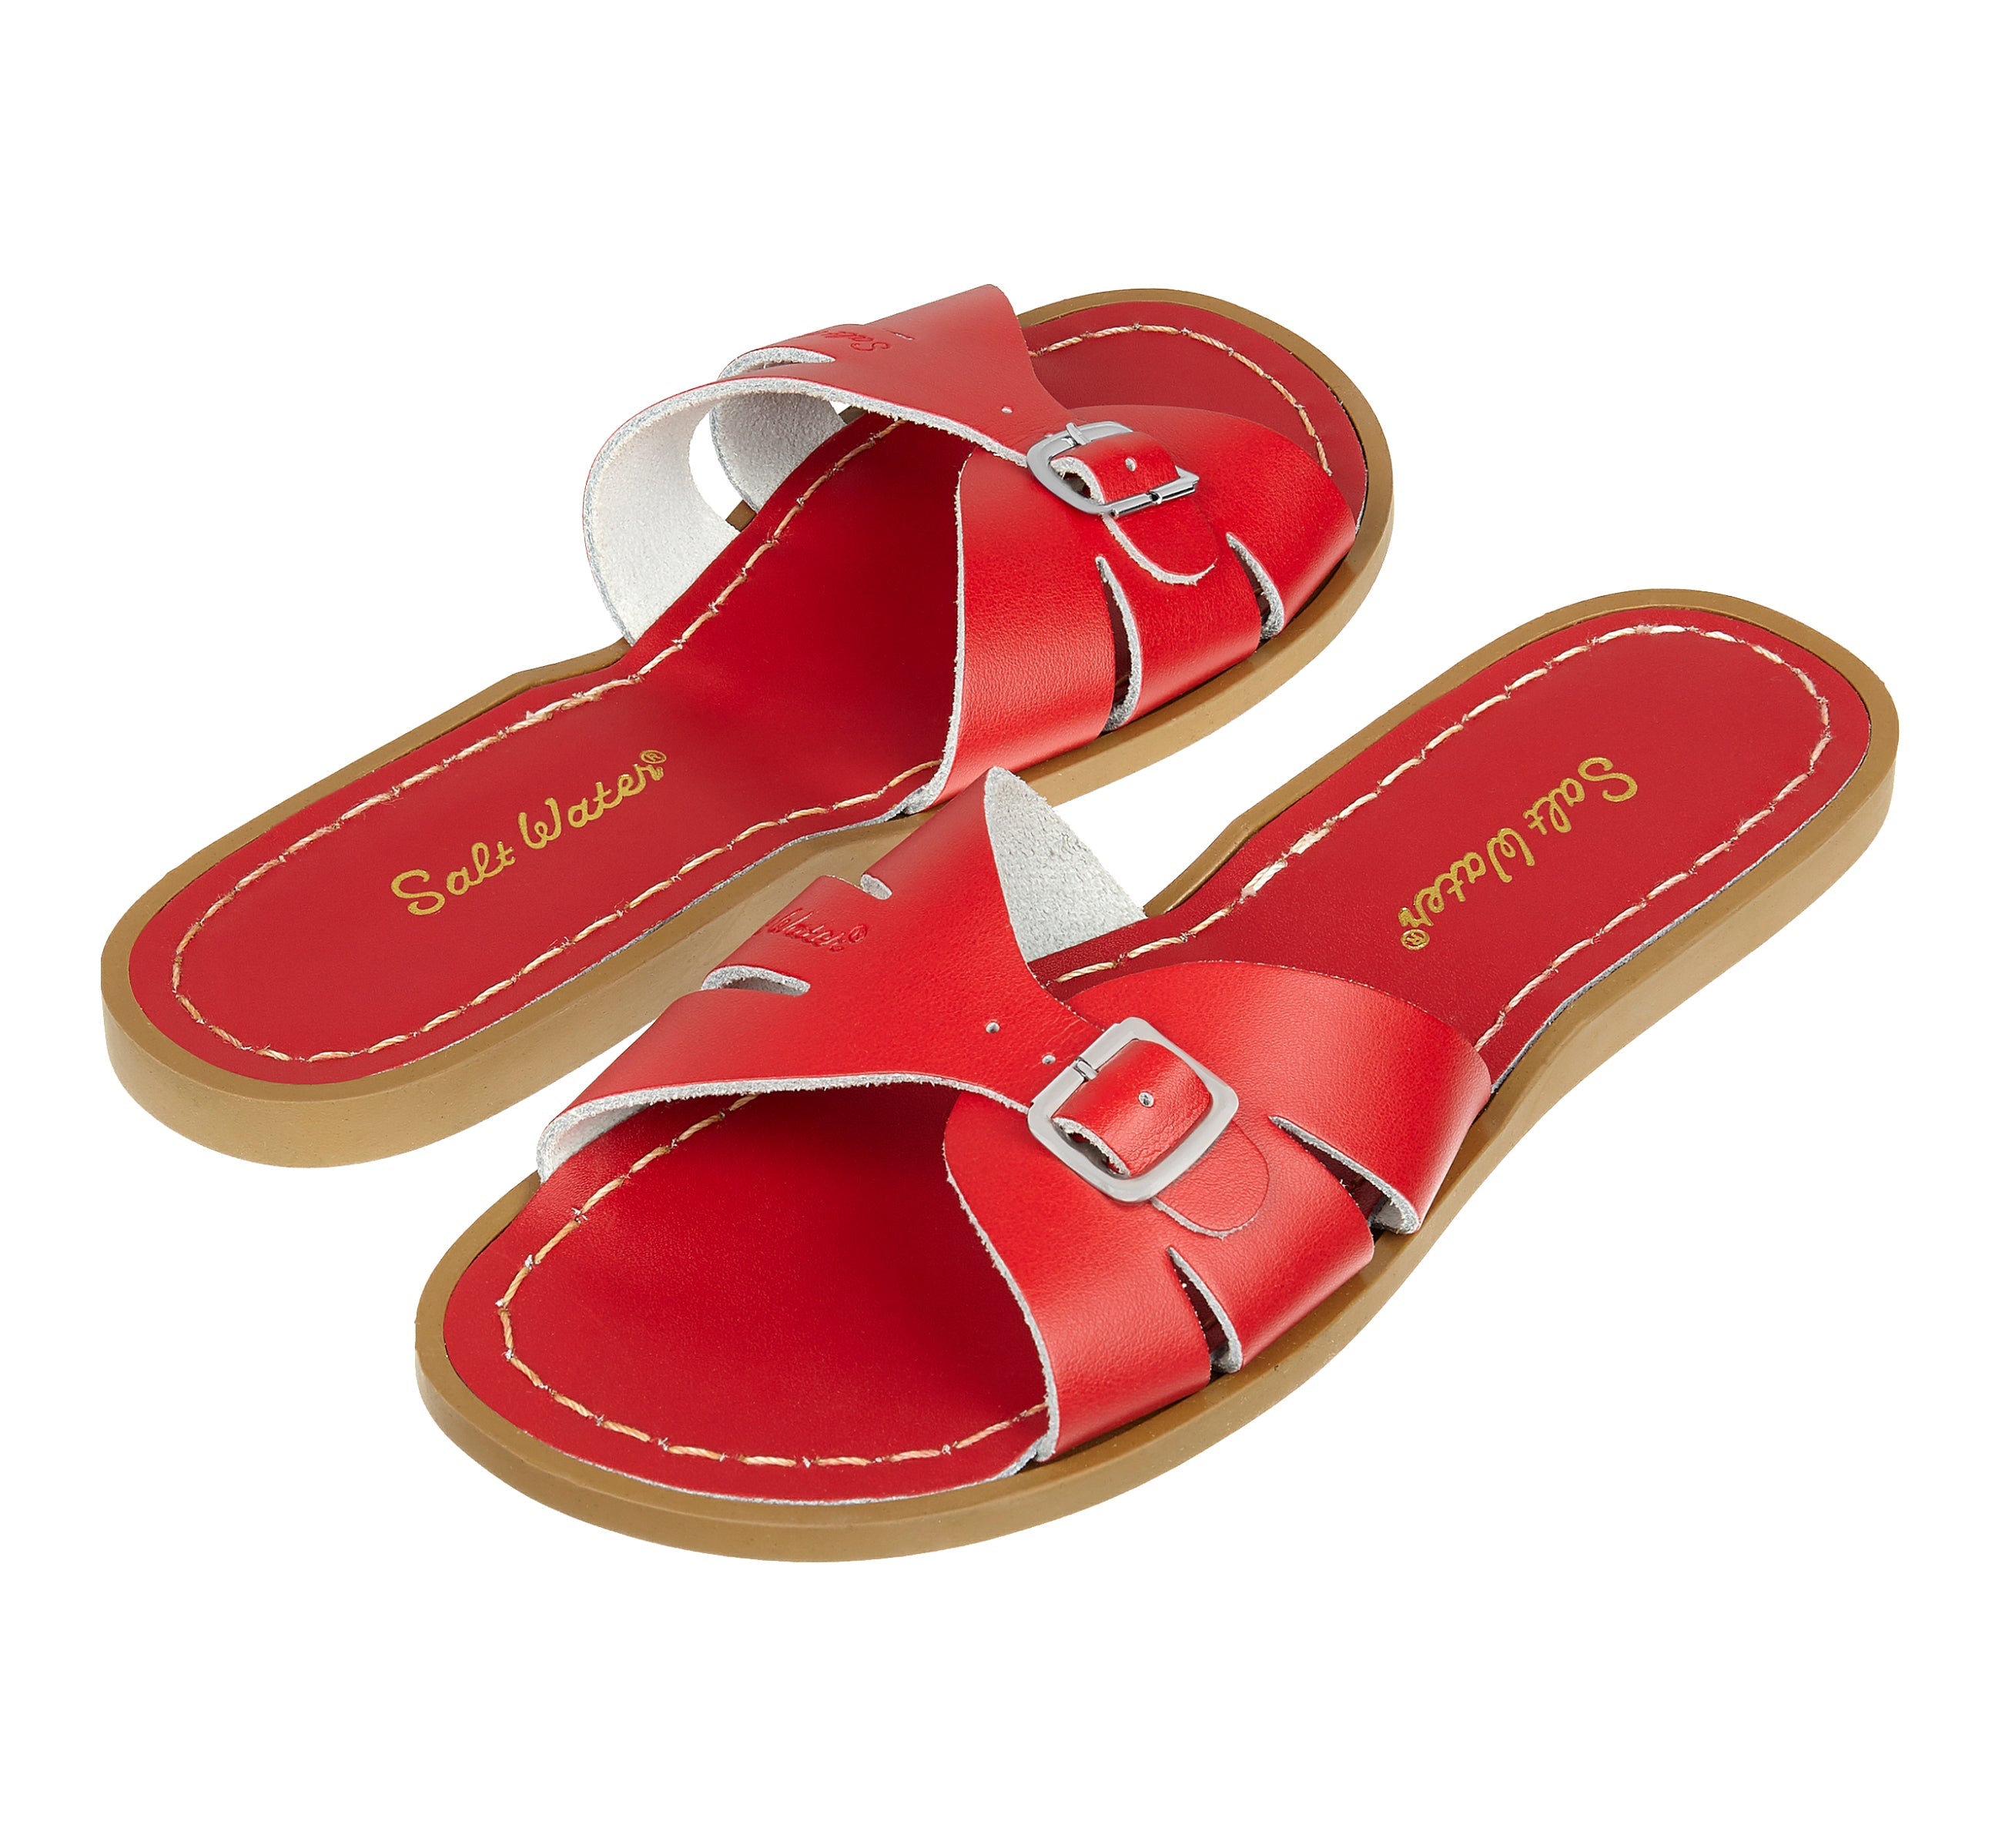 Classic Slide Sandale Für Damen In Rot